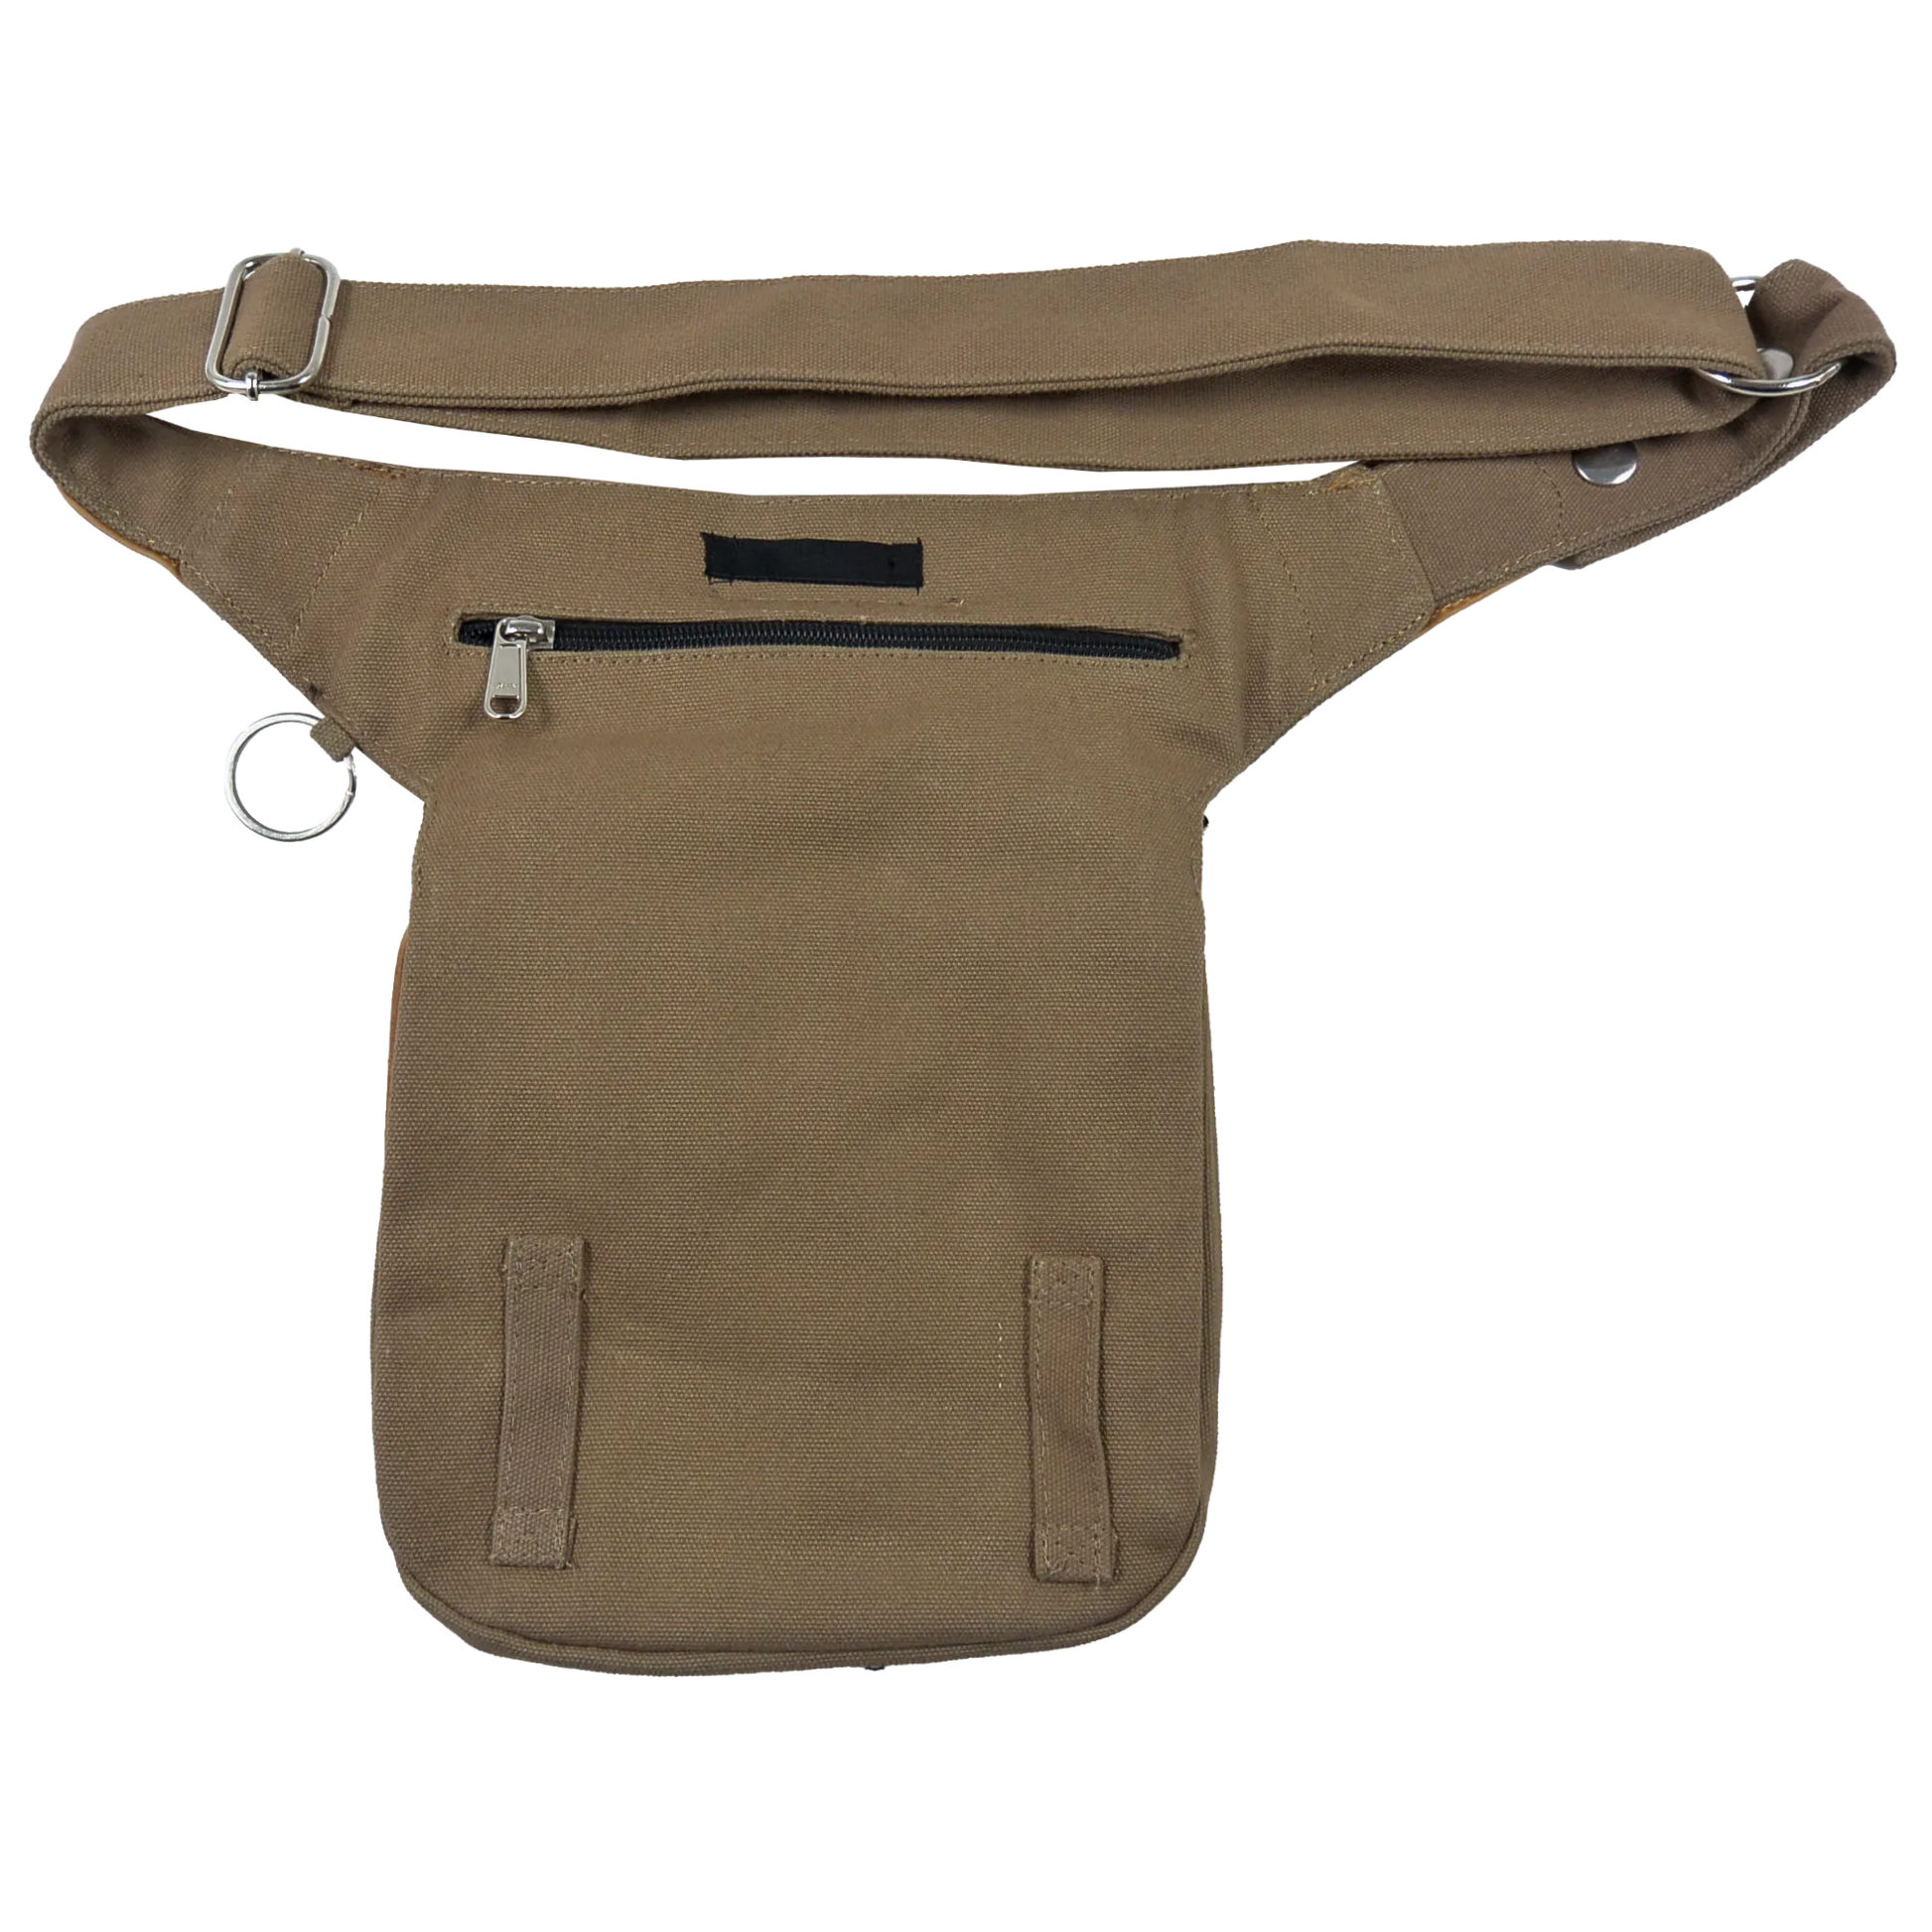 Hüfttasche, Gassi-Tasche aus Leder, pfote Herzprägung. Diese Hüfttasche hat einen Reißverschlussfach auf der hinteren Seite.